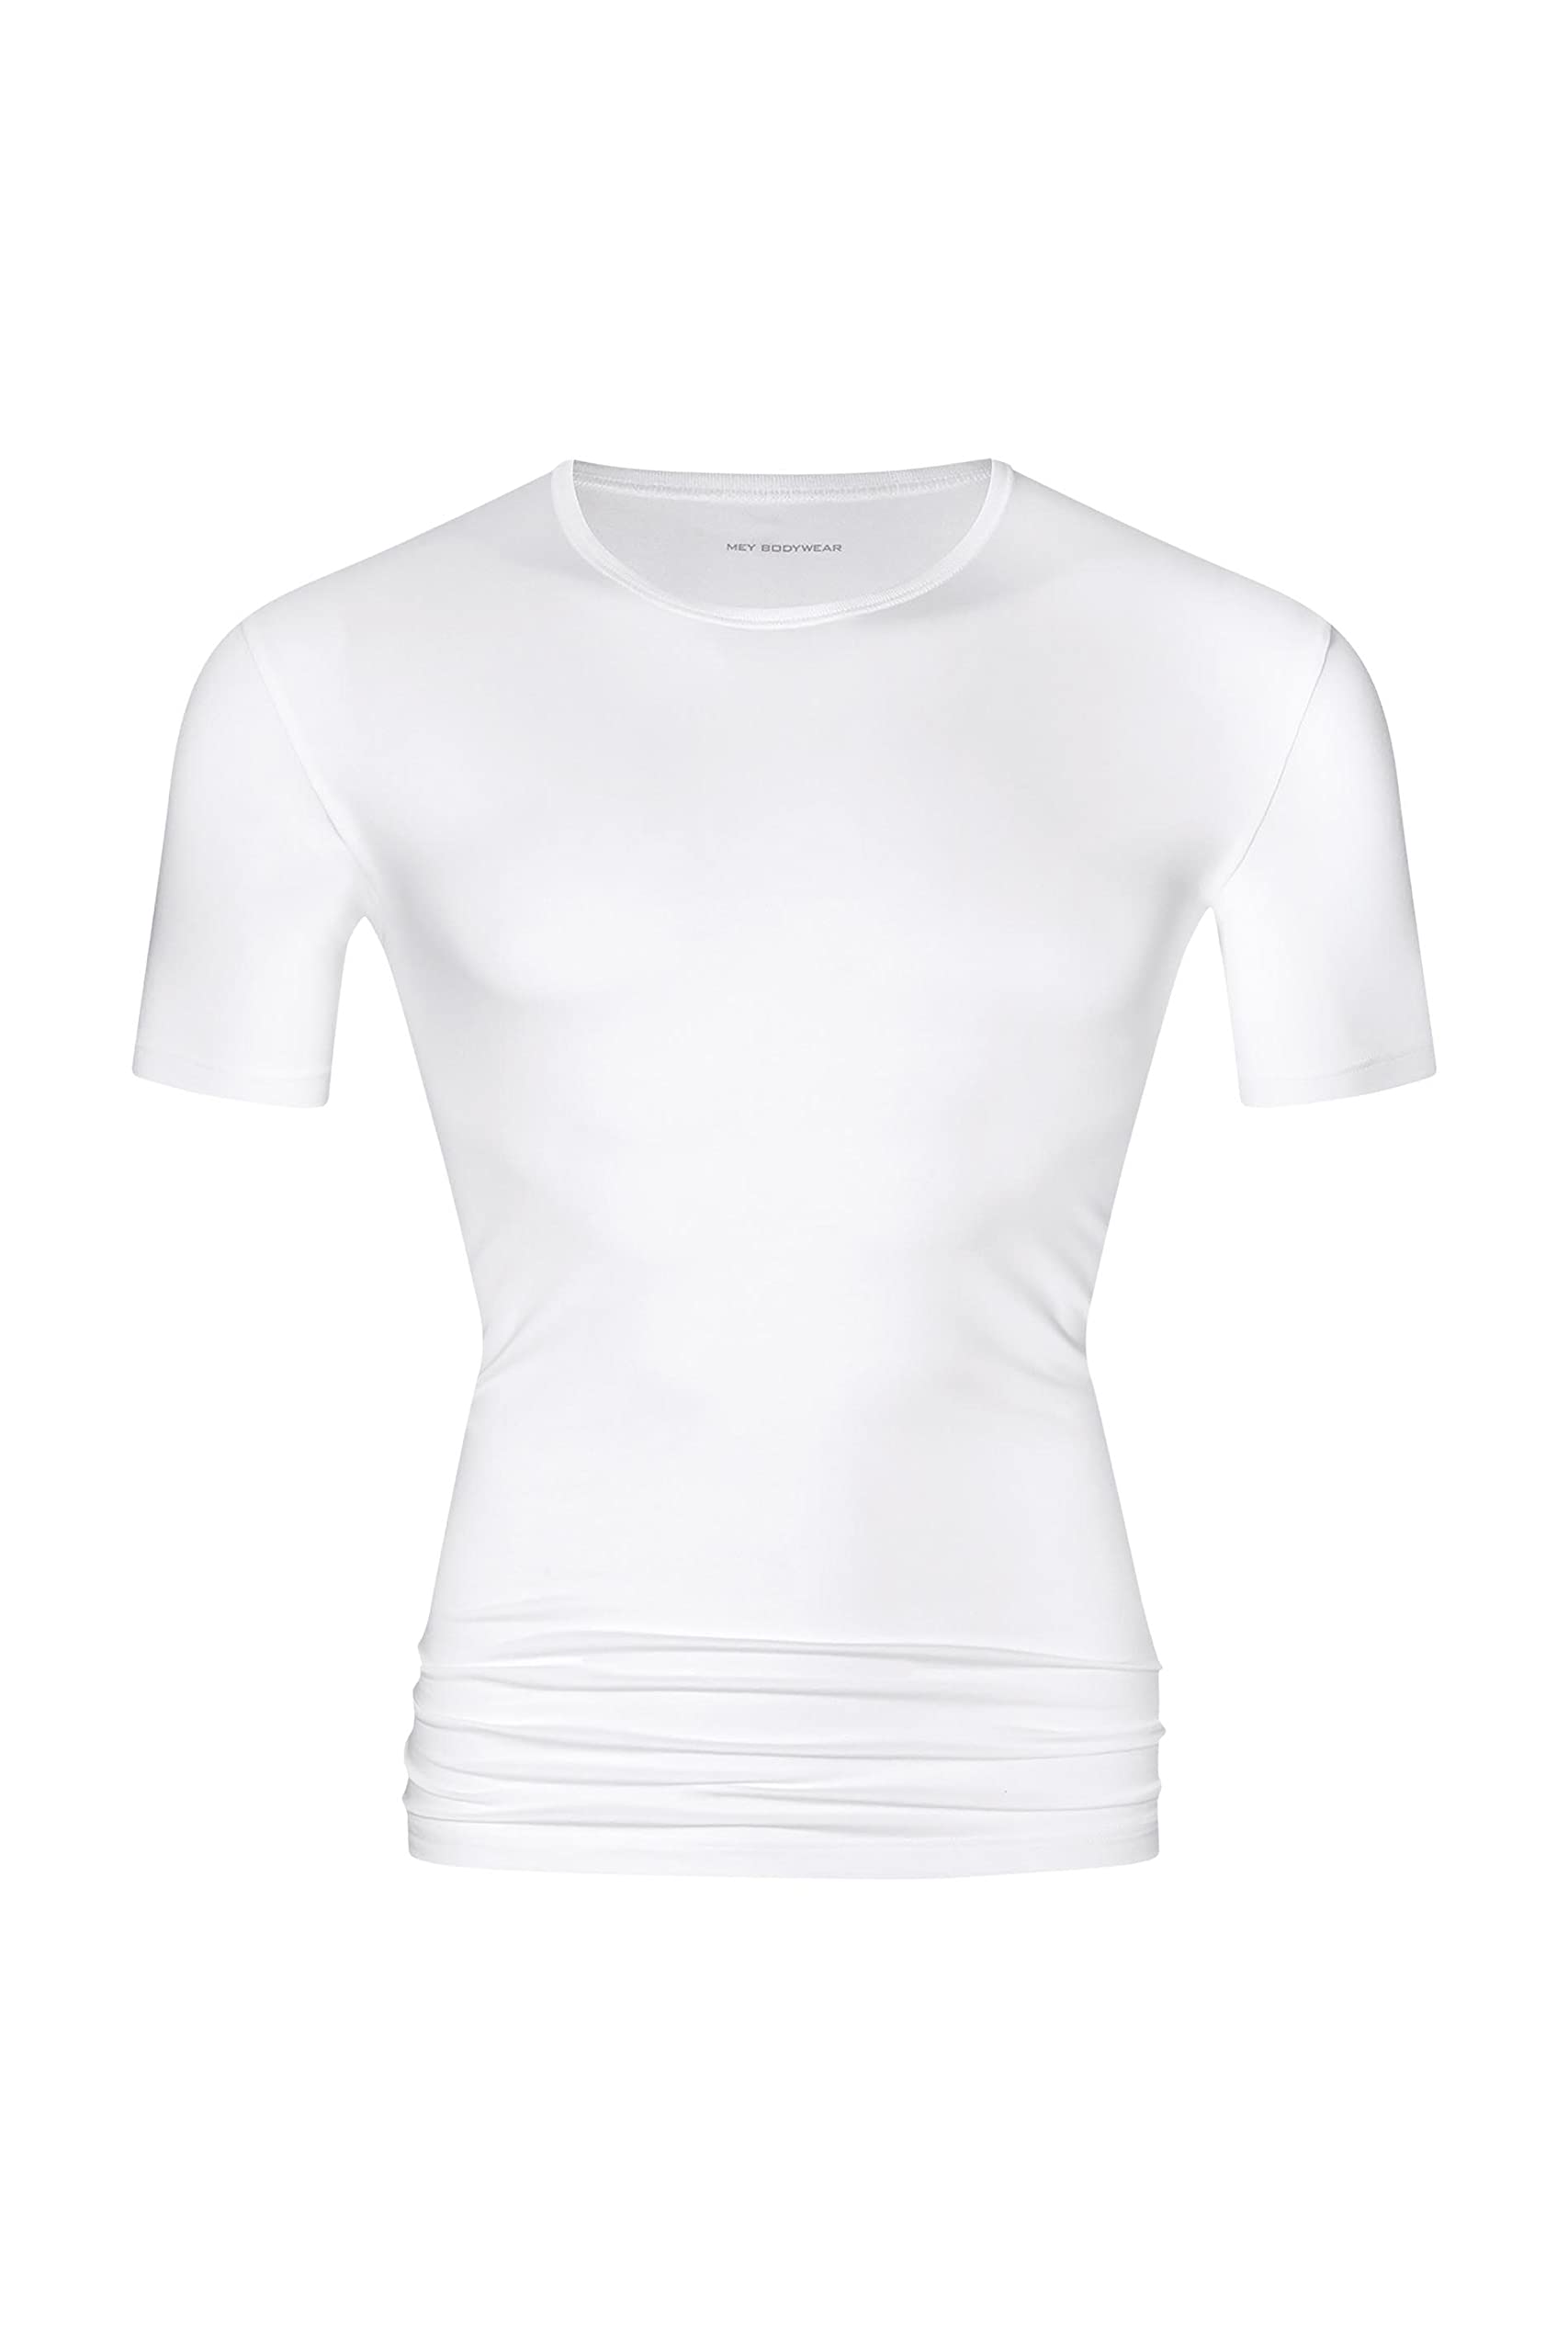 Mey Dry Cotton O-Ausschnitt T-Shirt Weiß - Grösse M - Herren - Bekleidung - Slim-fit - 46002